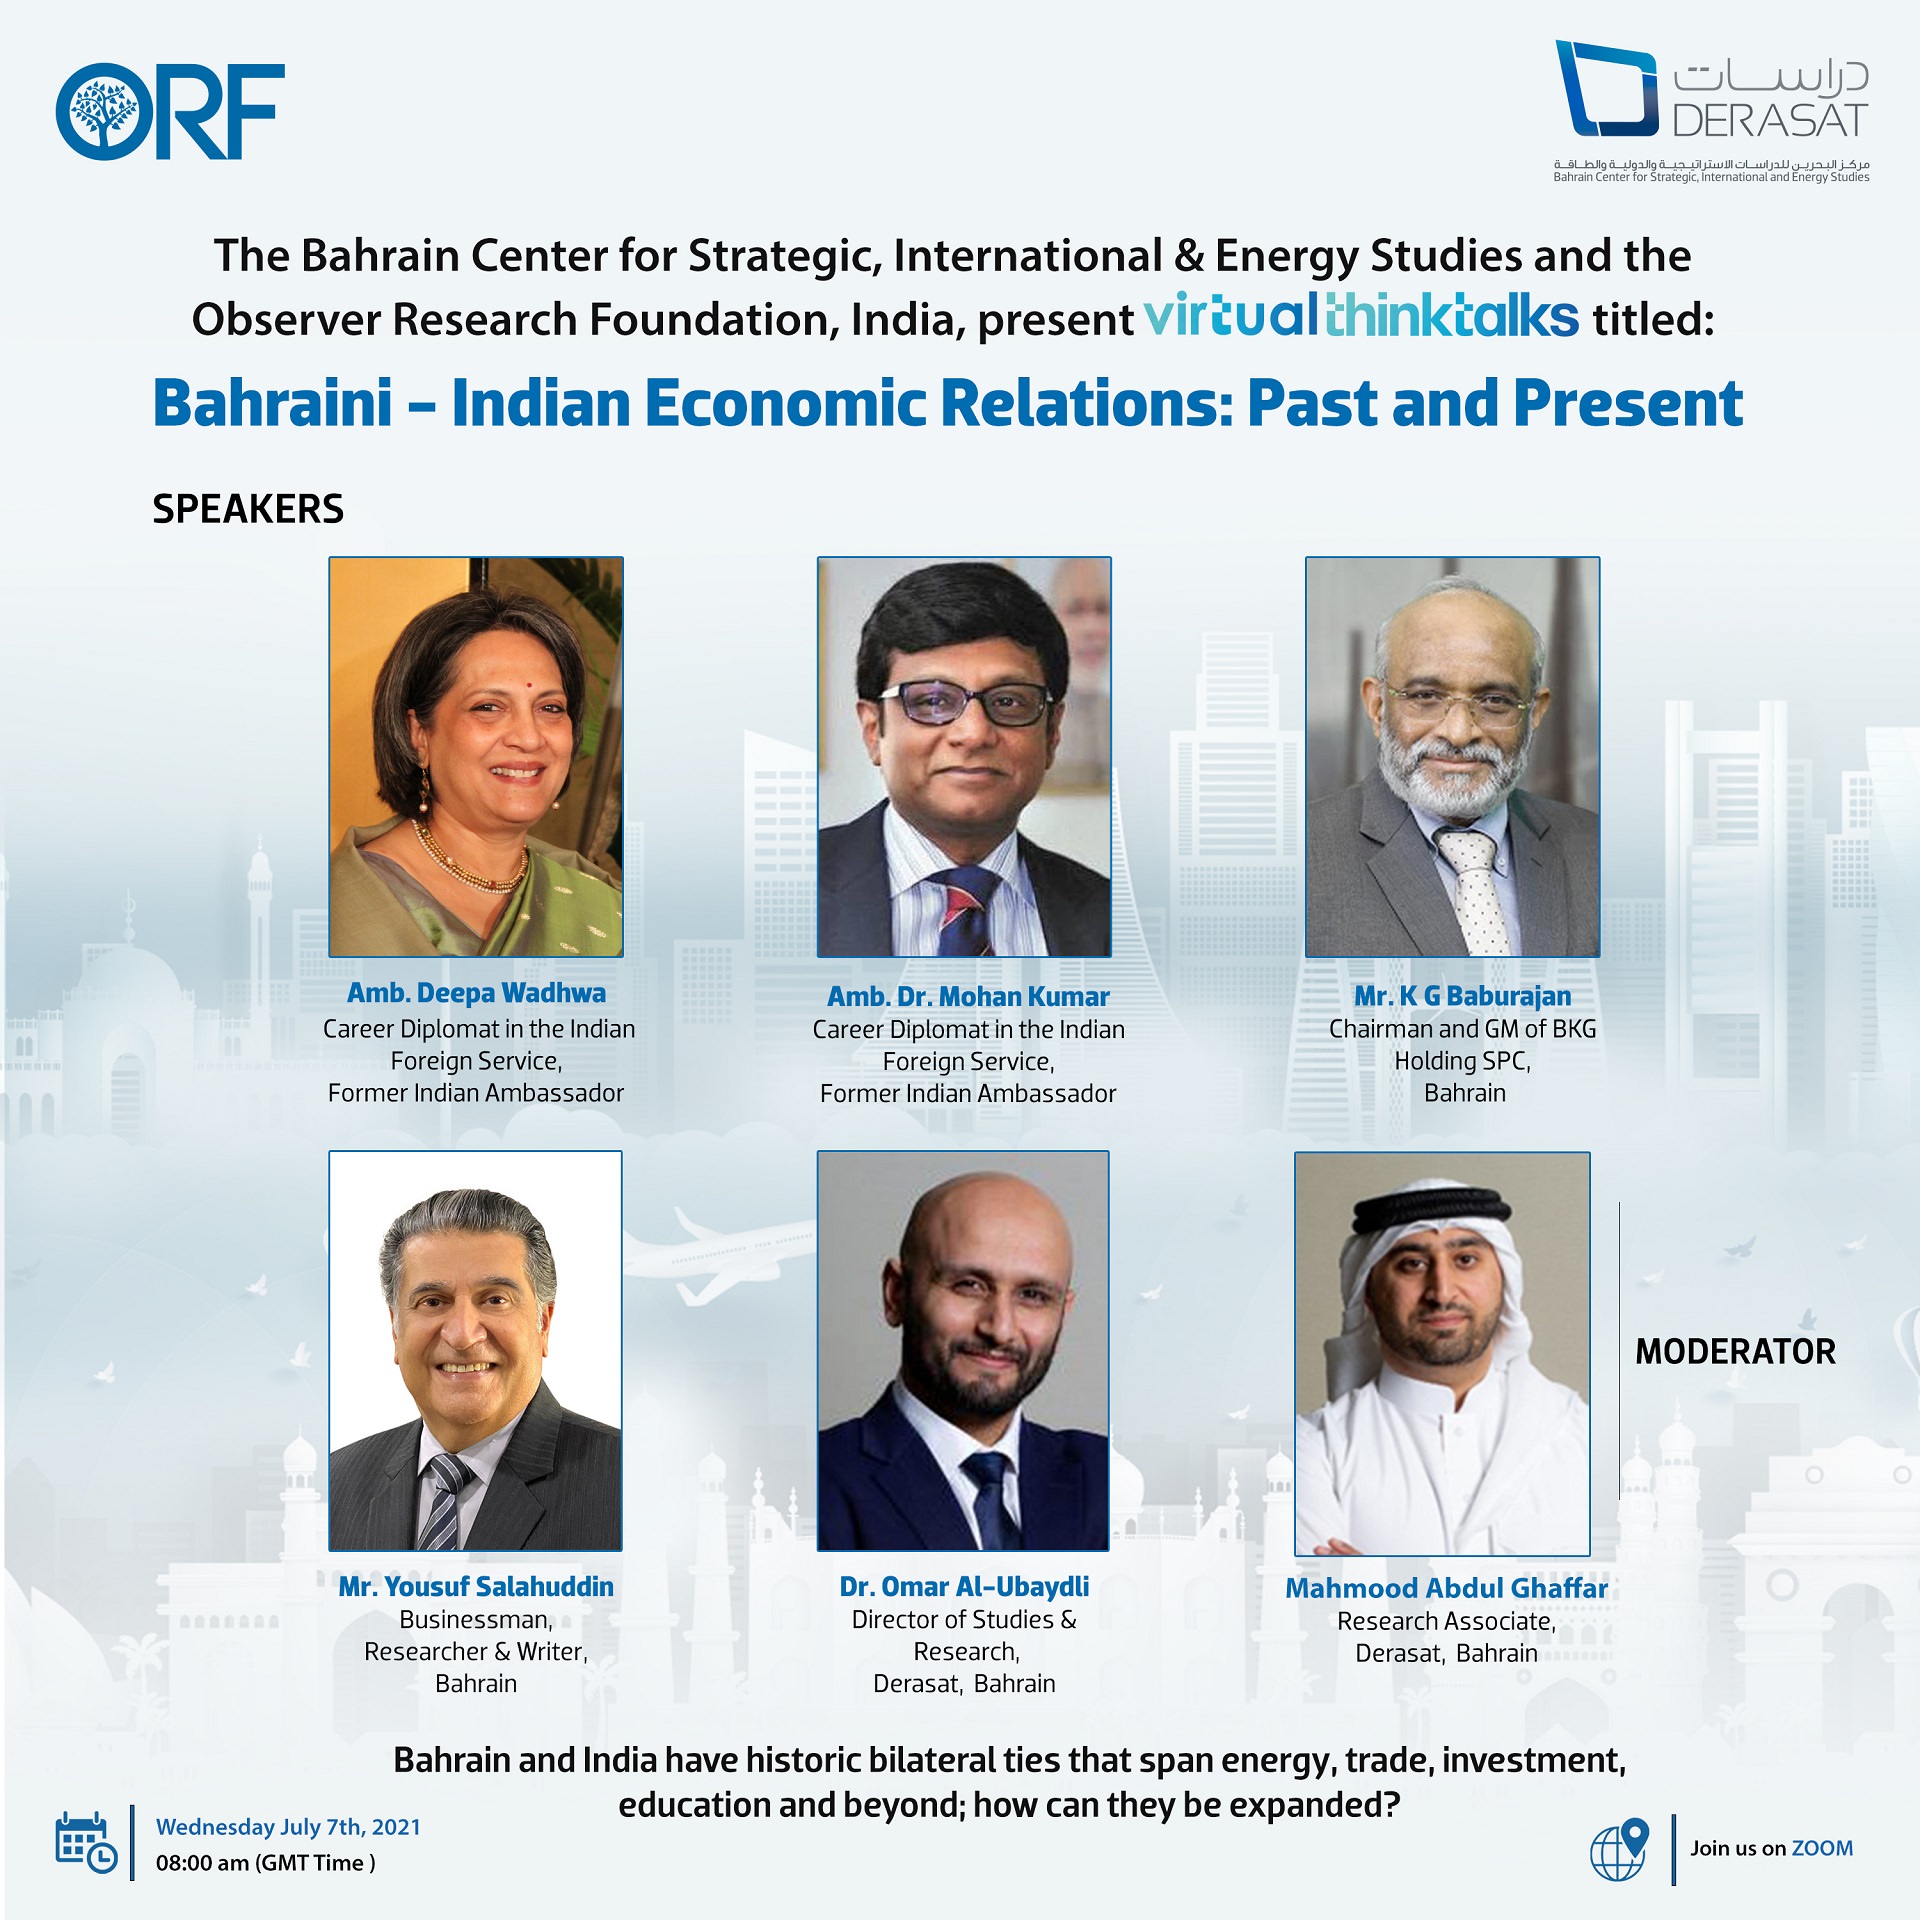 العلاقات الاقتصادية بين البحرين والهند: بين الماضي والحاضر